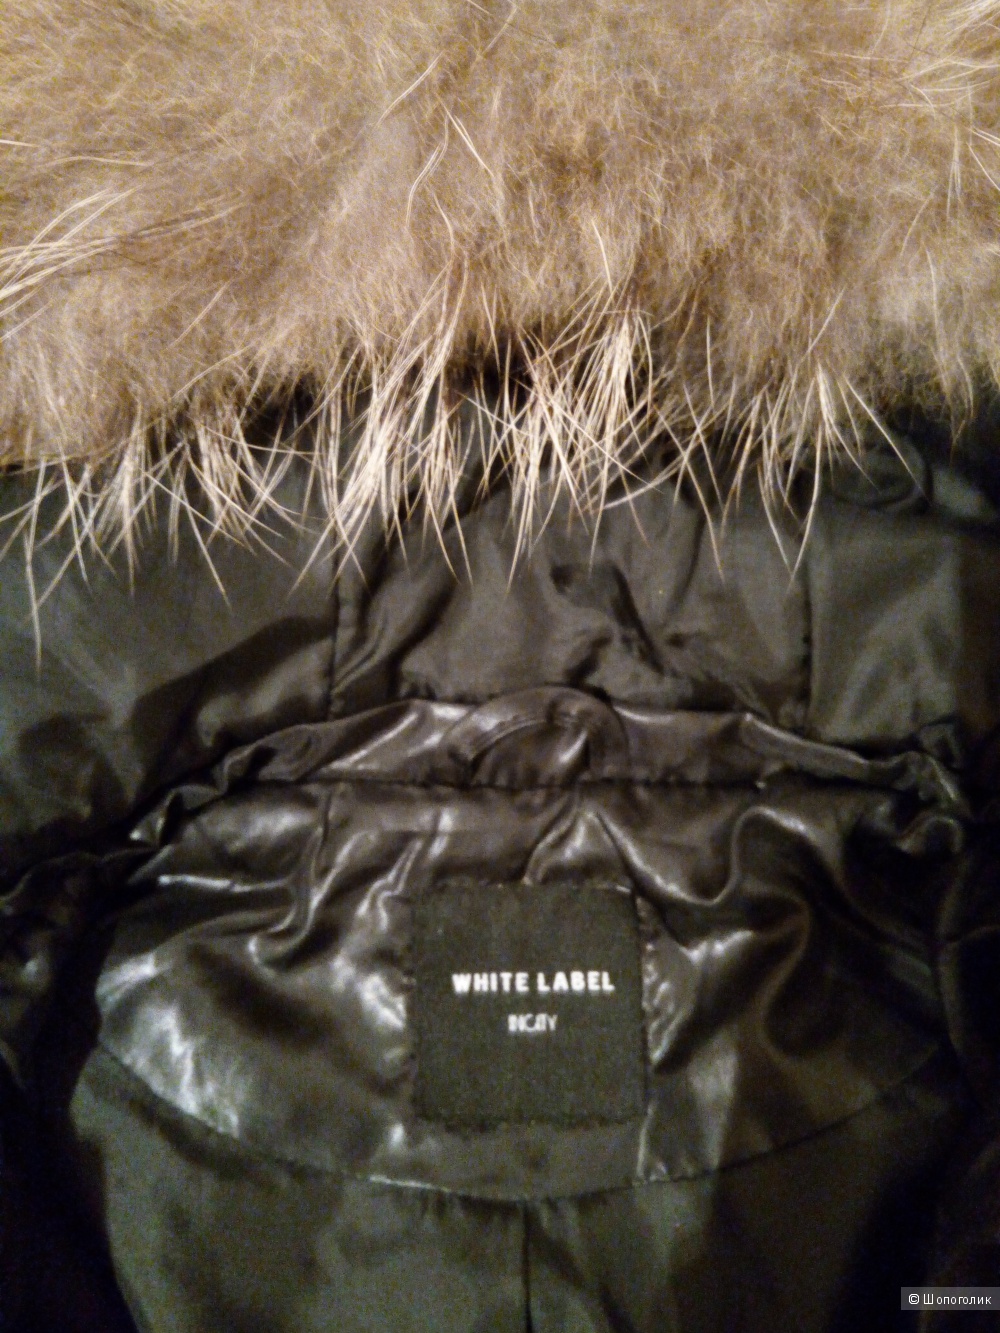 Стеганое пальто Inciti, 44 размер